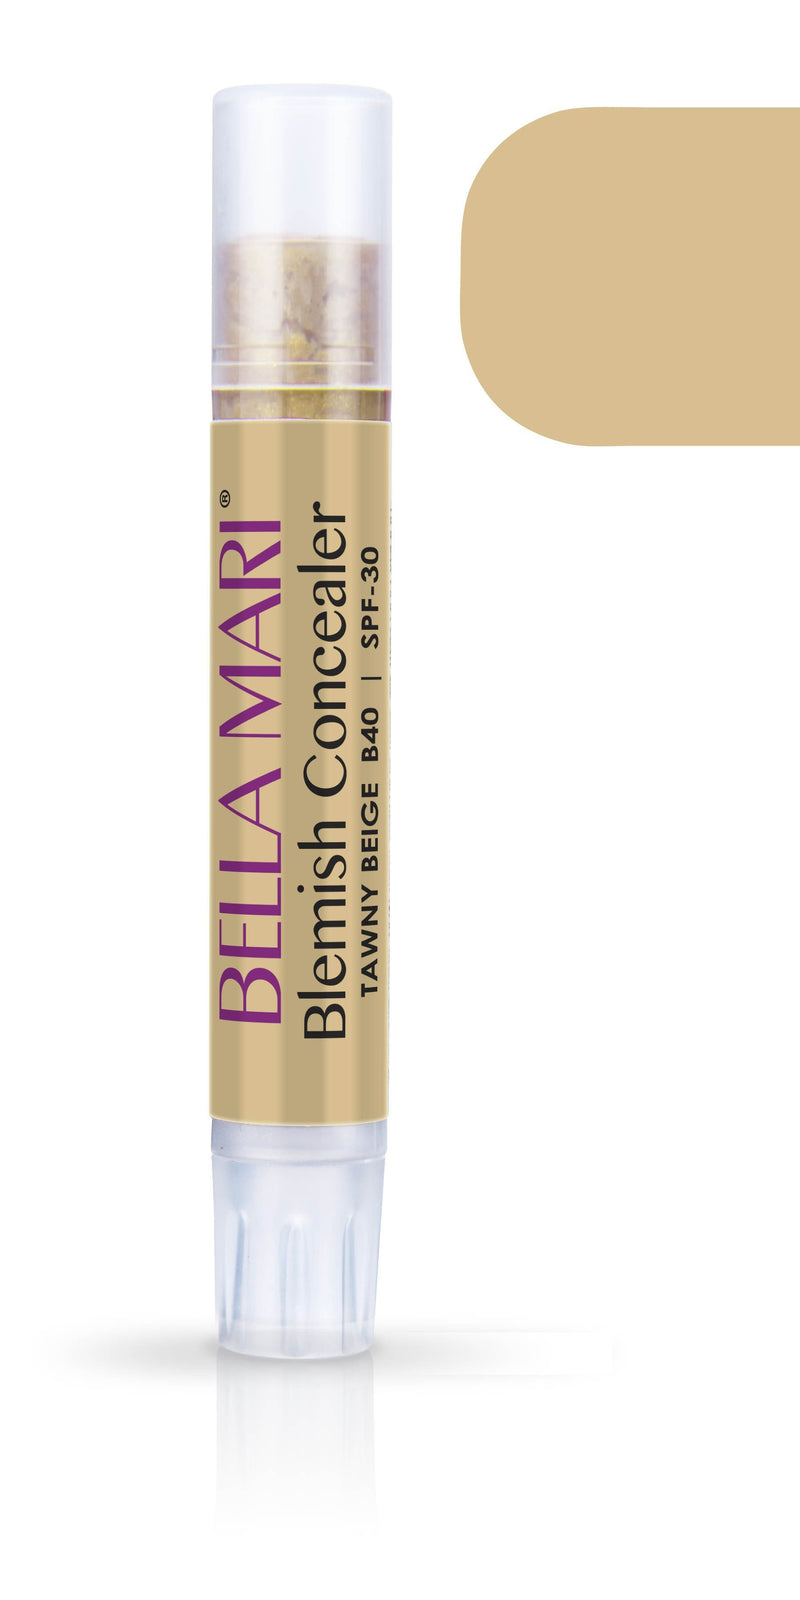 Bella Mari Natural Blemish Concealer Stick; 0.1floz - Bella Mari Natural Blemish Concealer Stick; 0.1floz - Tawny Beige